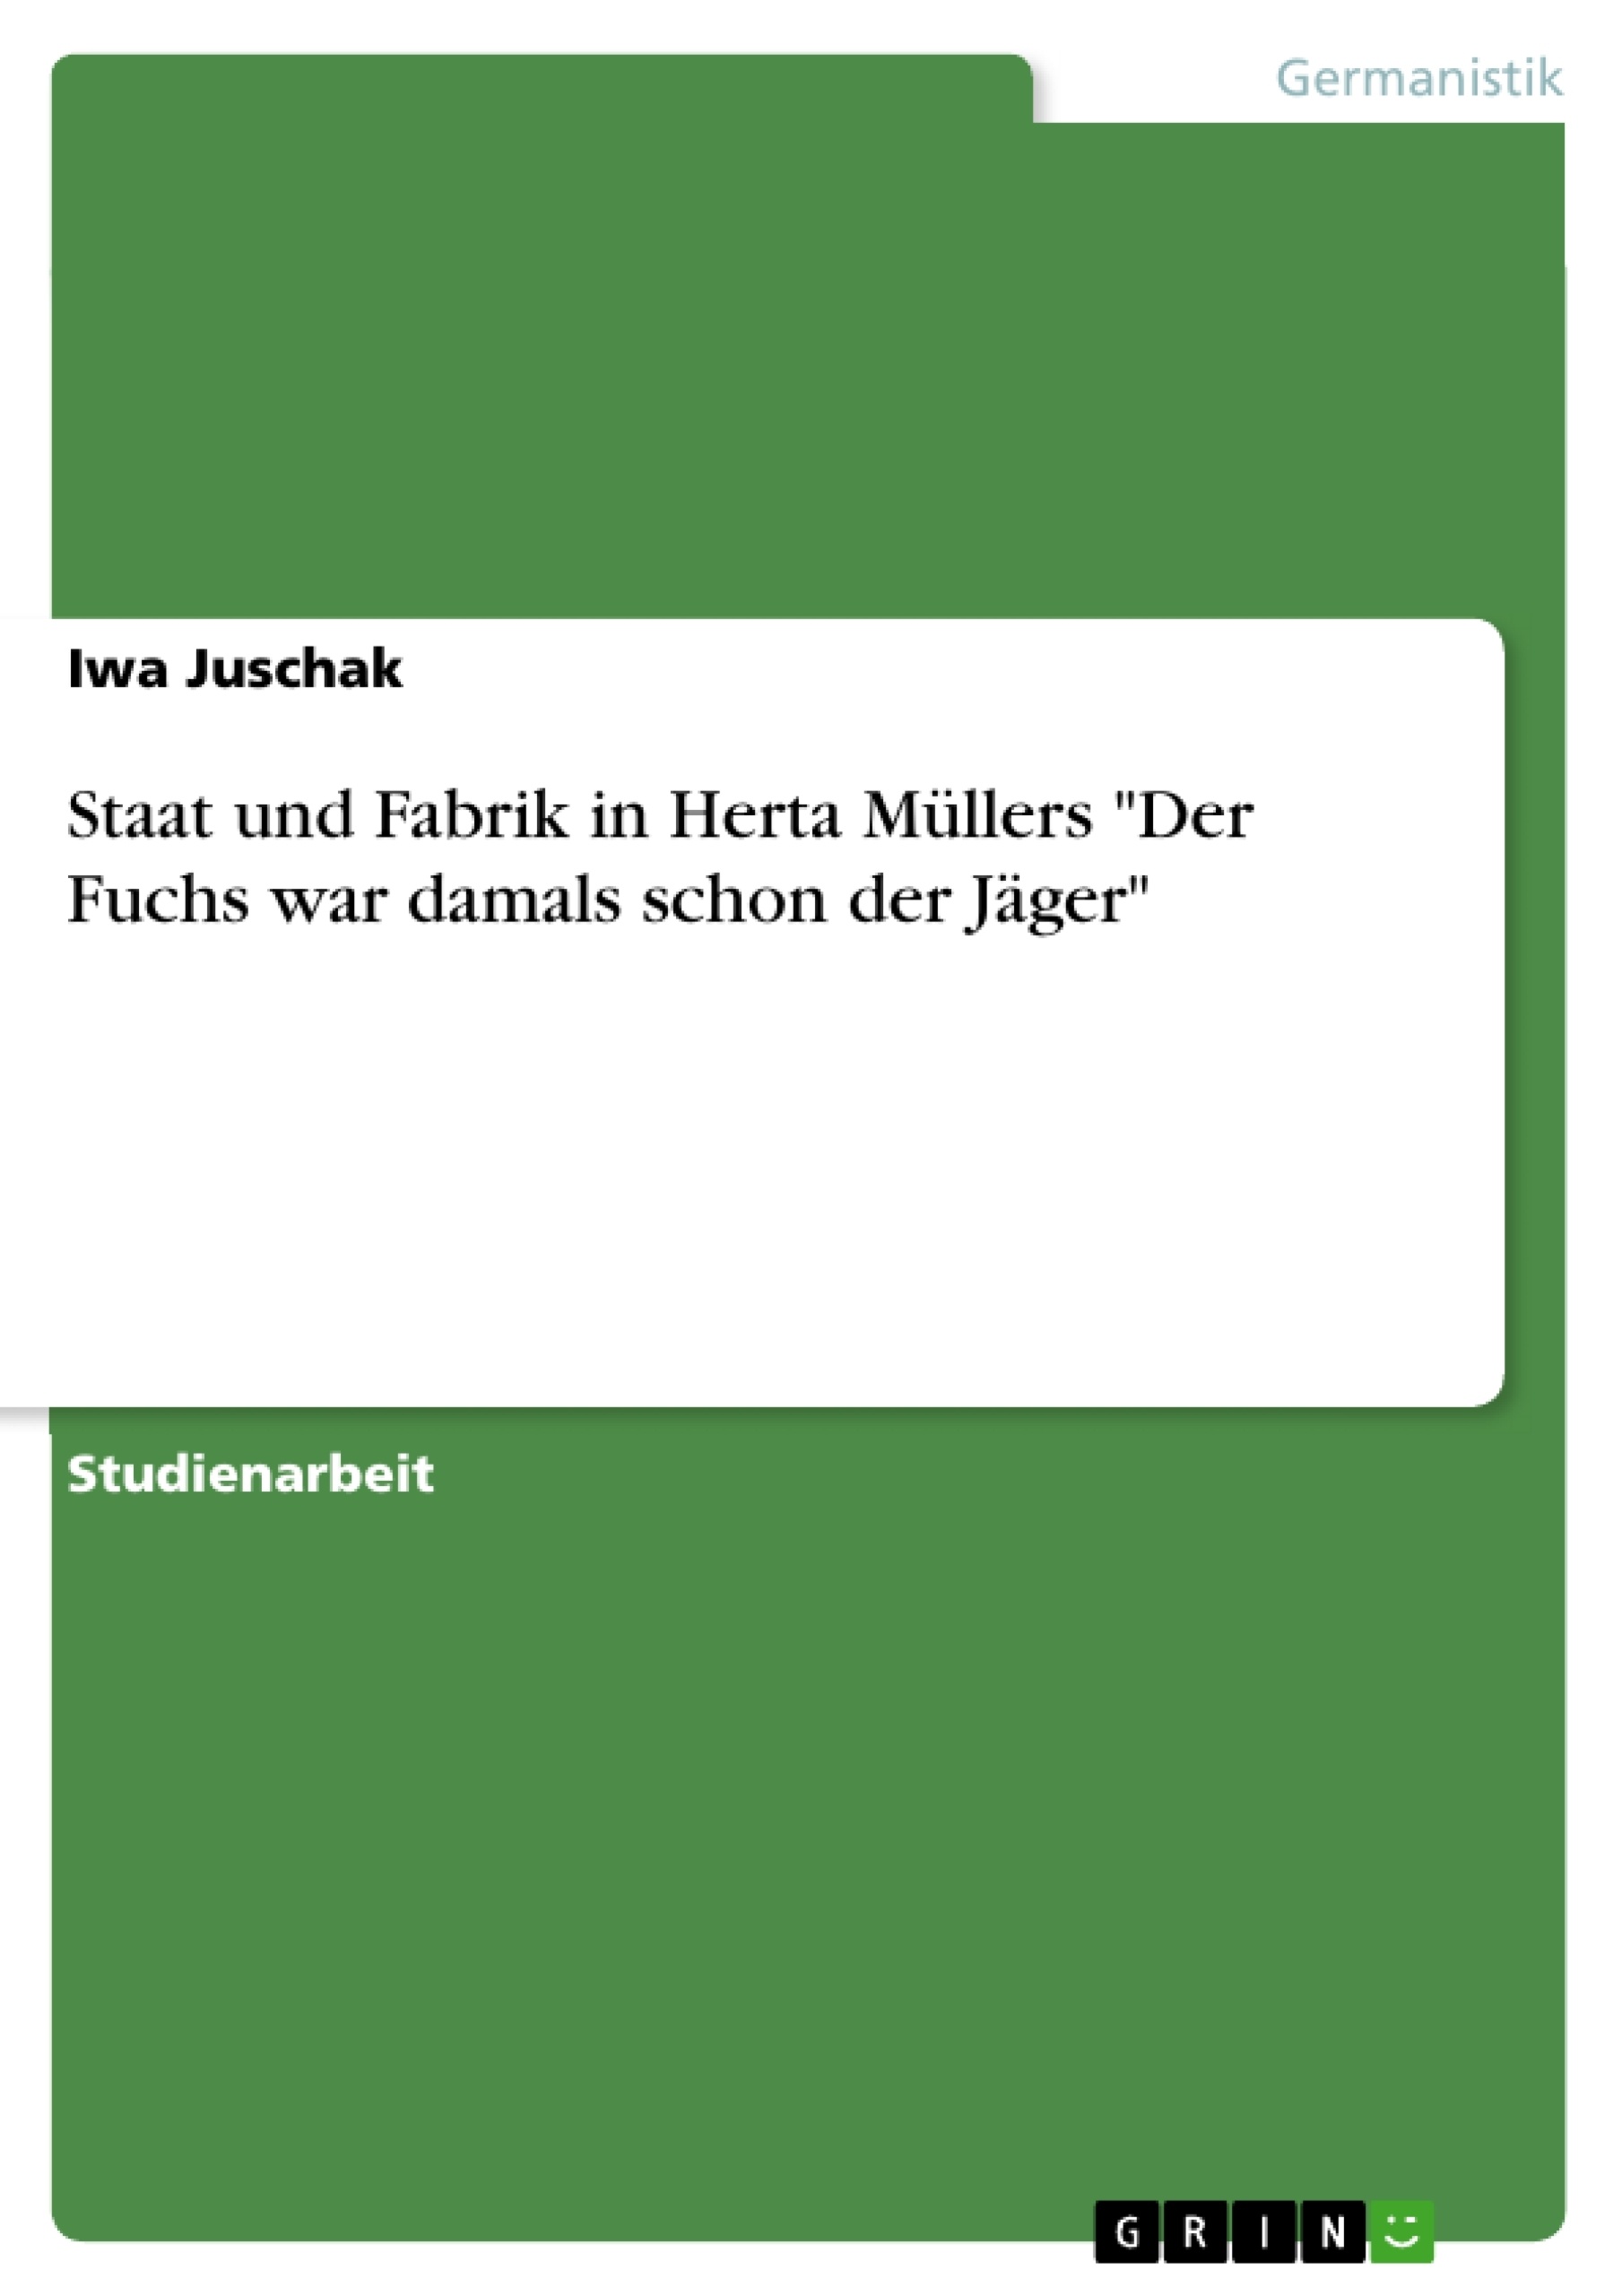 Título: Staat und Fabrik in Herta Müllers "Der Fuchs war damals schon der Jäger"